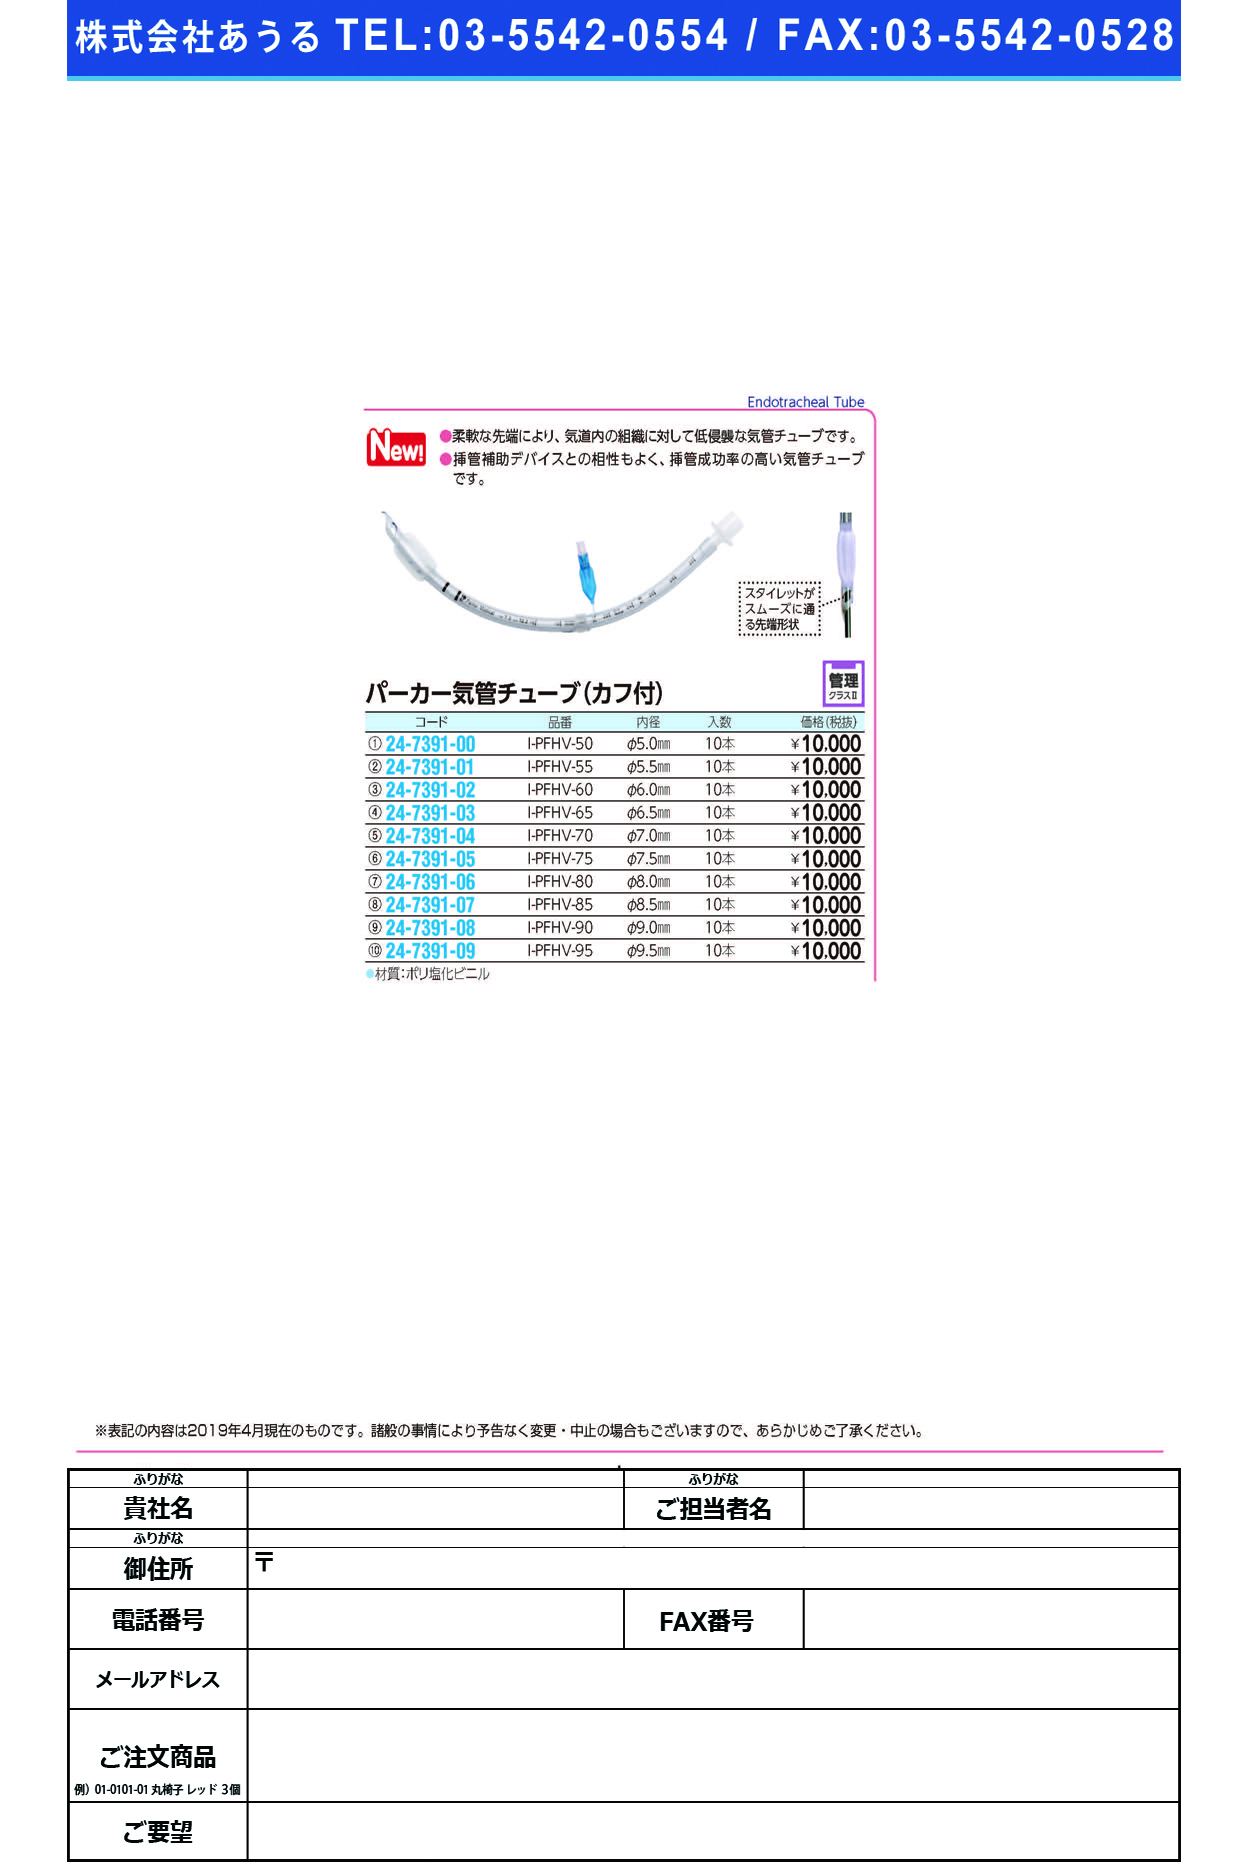 (24-7391-06)パーカー気管チューブI-PFHV-80(8.0MM)10ﾎﾝ ﾊﾟｰｶｰｷｶﾝﾁｭｰﾌﾞ(日本メディカルネクスト)【1箱単位】【2019年カタログ商品】